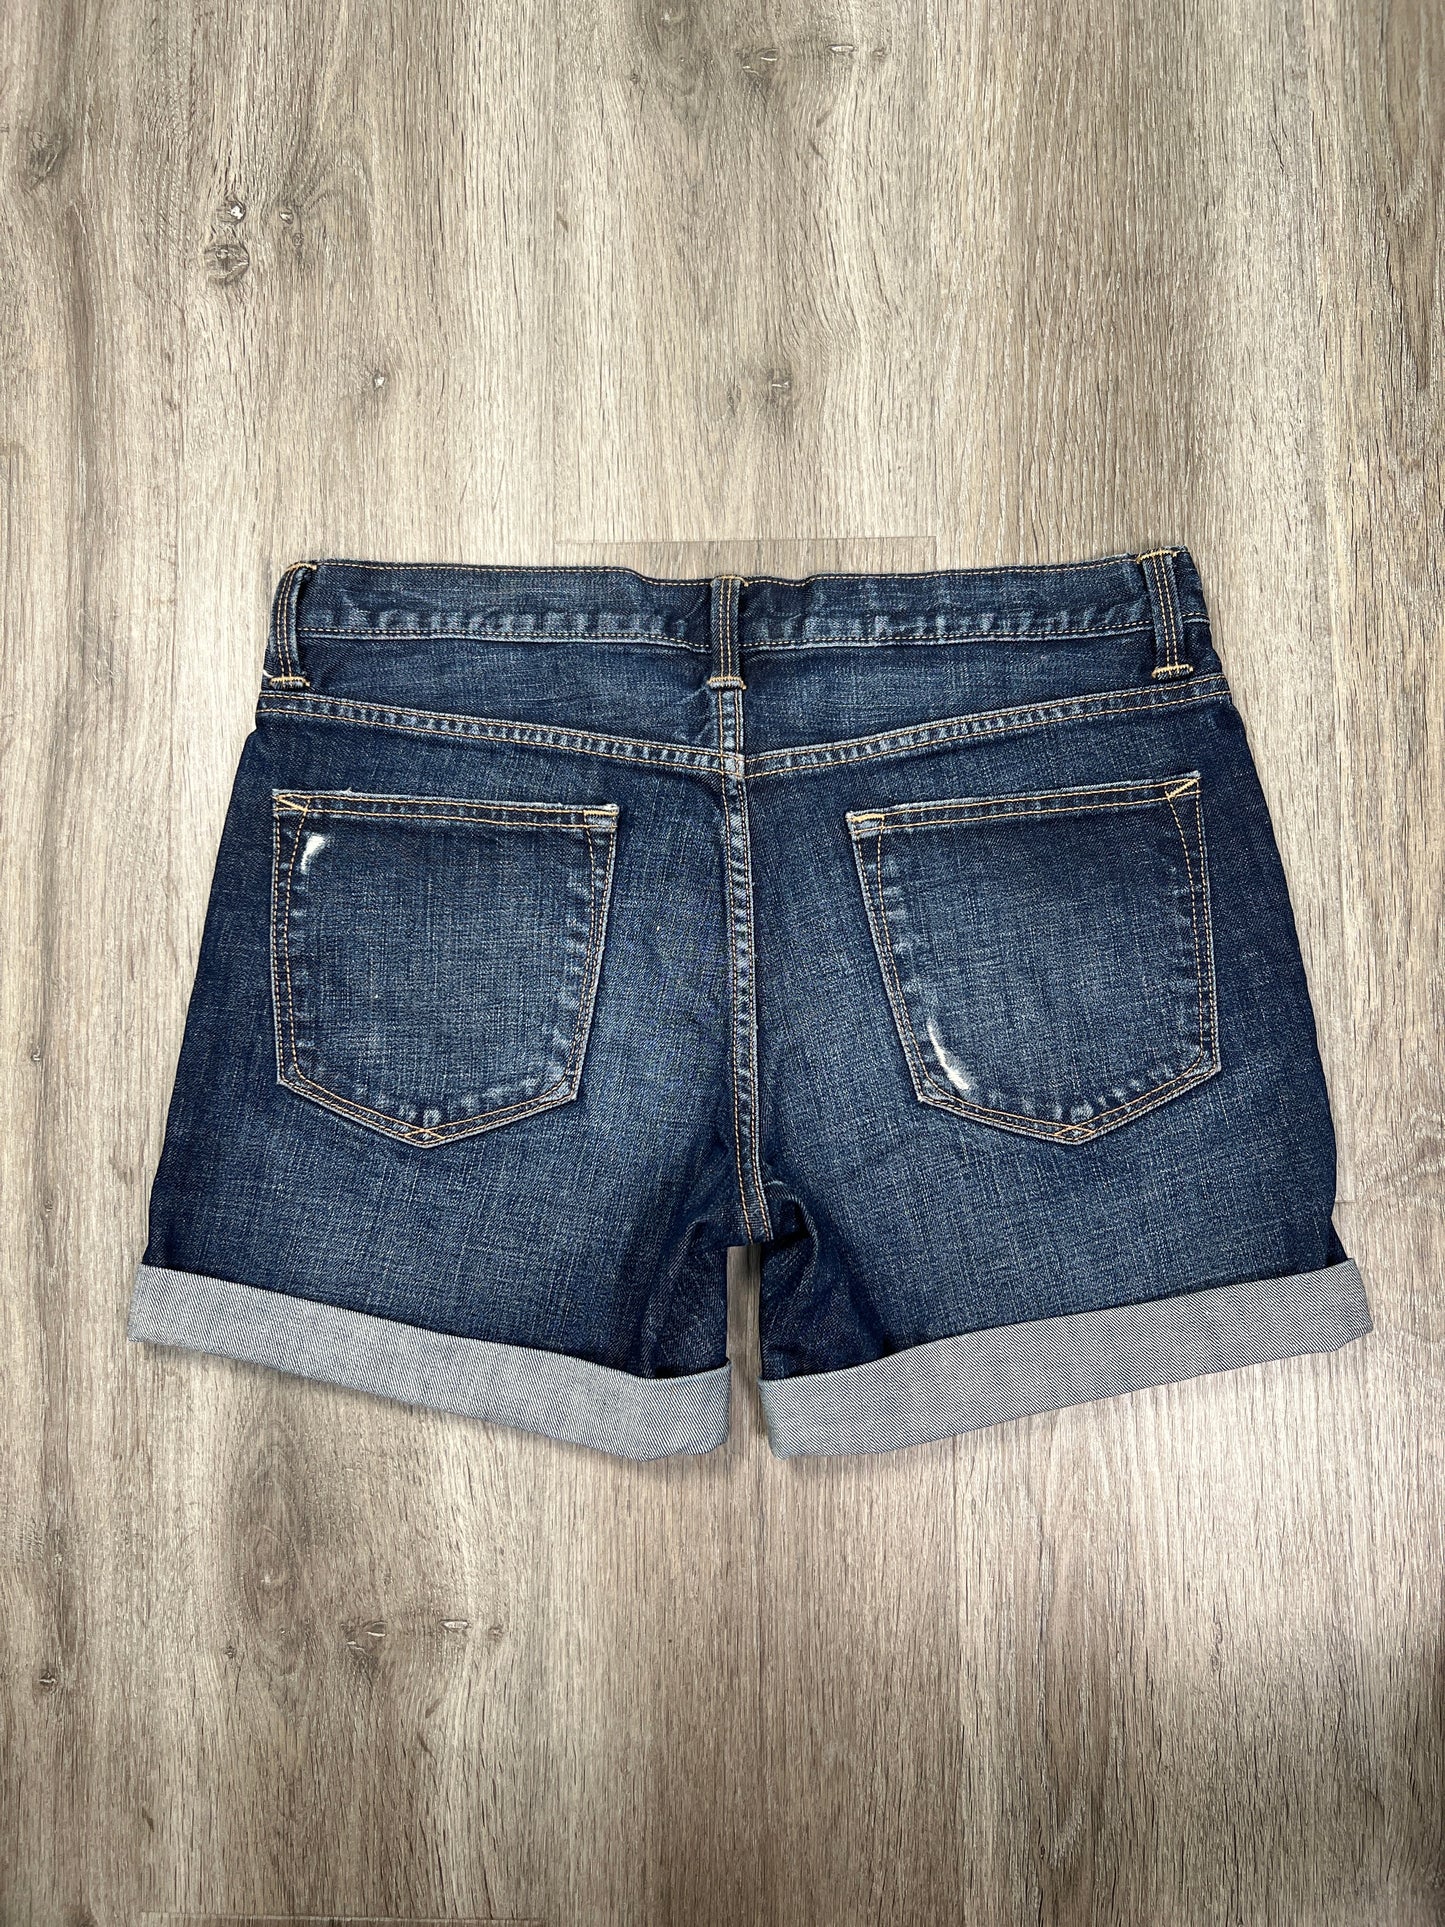 Blue Denim Shorts Gap, Size S